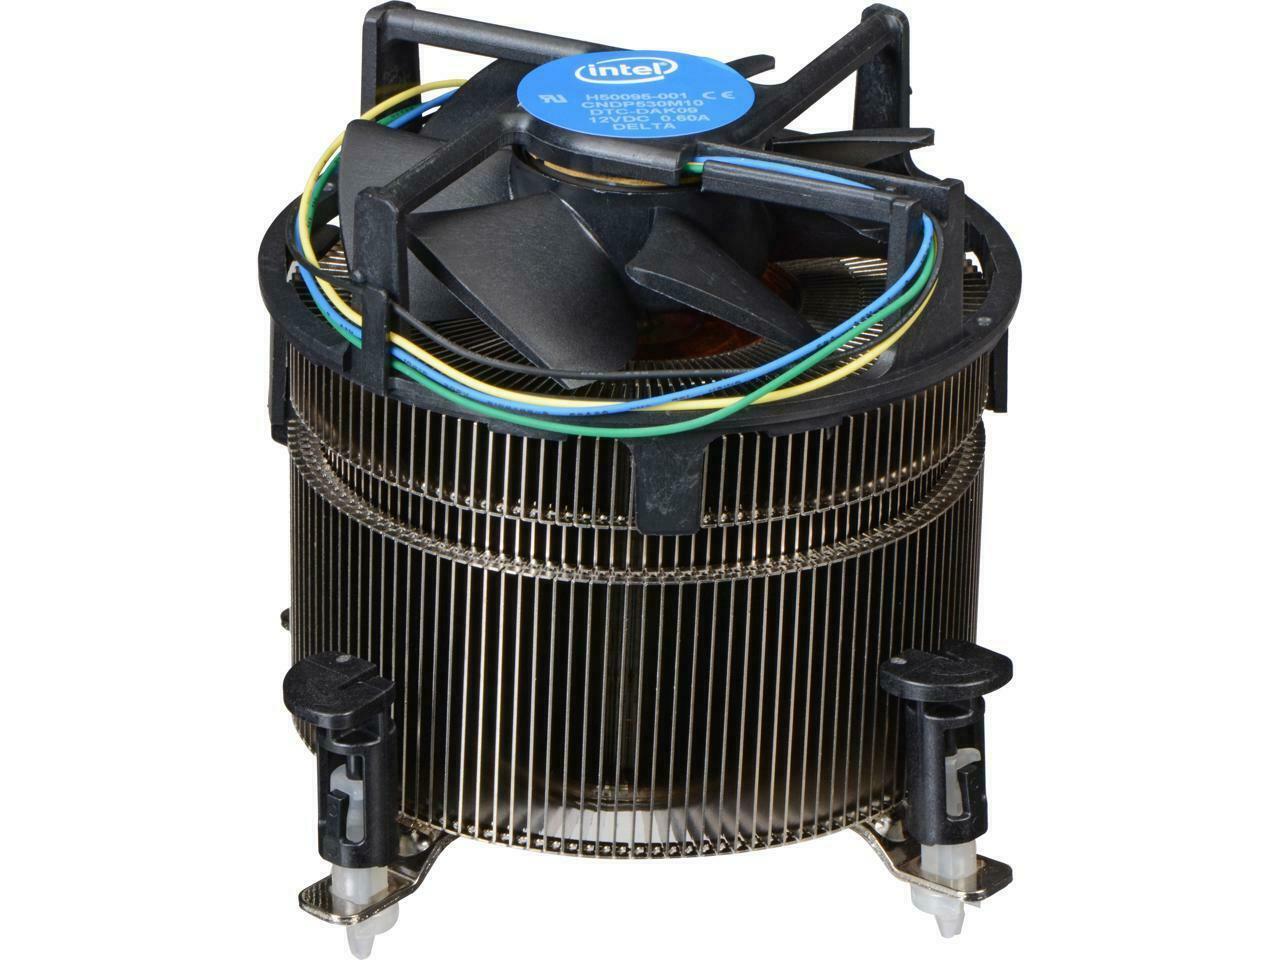 Intel Cooling Fan/Heatsink - Socket H3 LGA-1150, H4 LGA-1151, H LGA-1156 4,5,6th